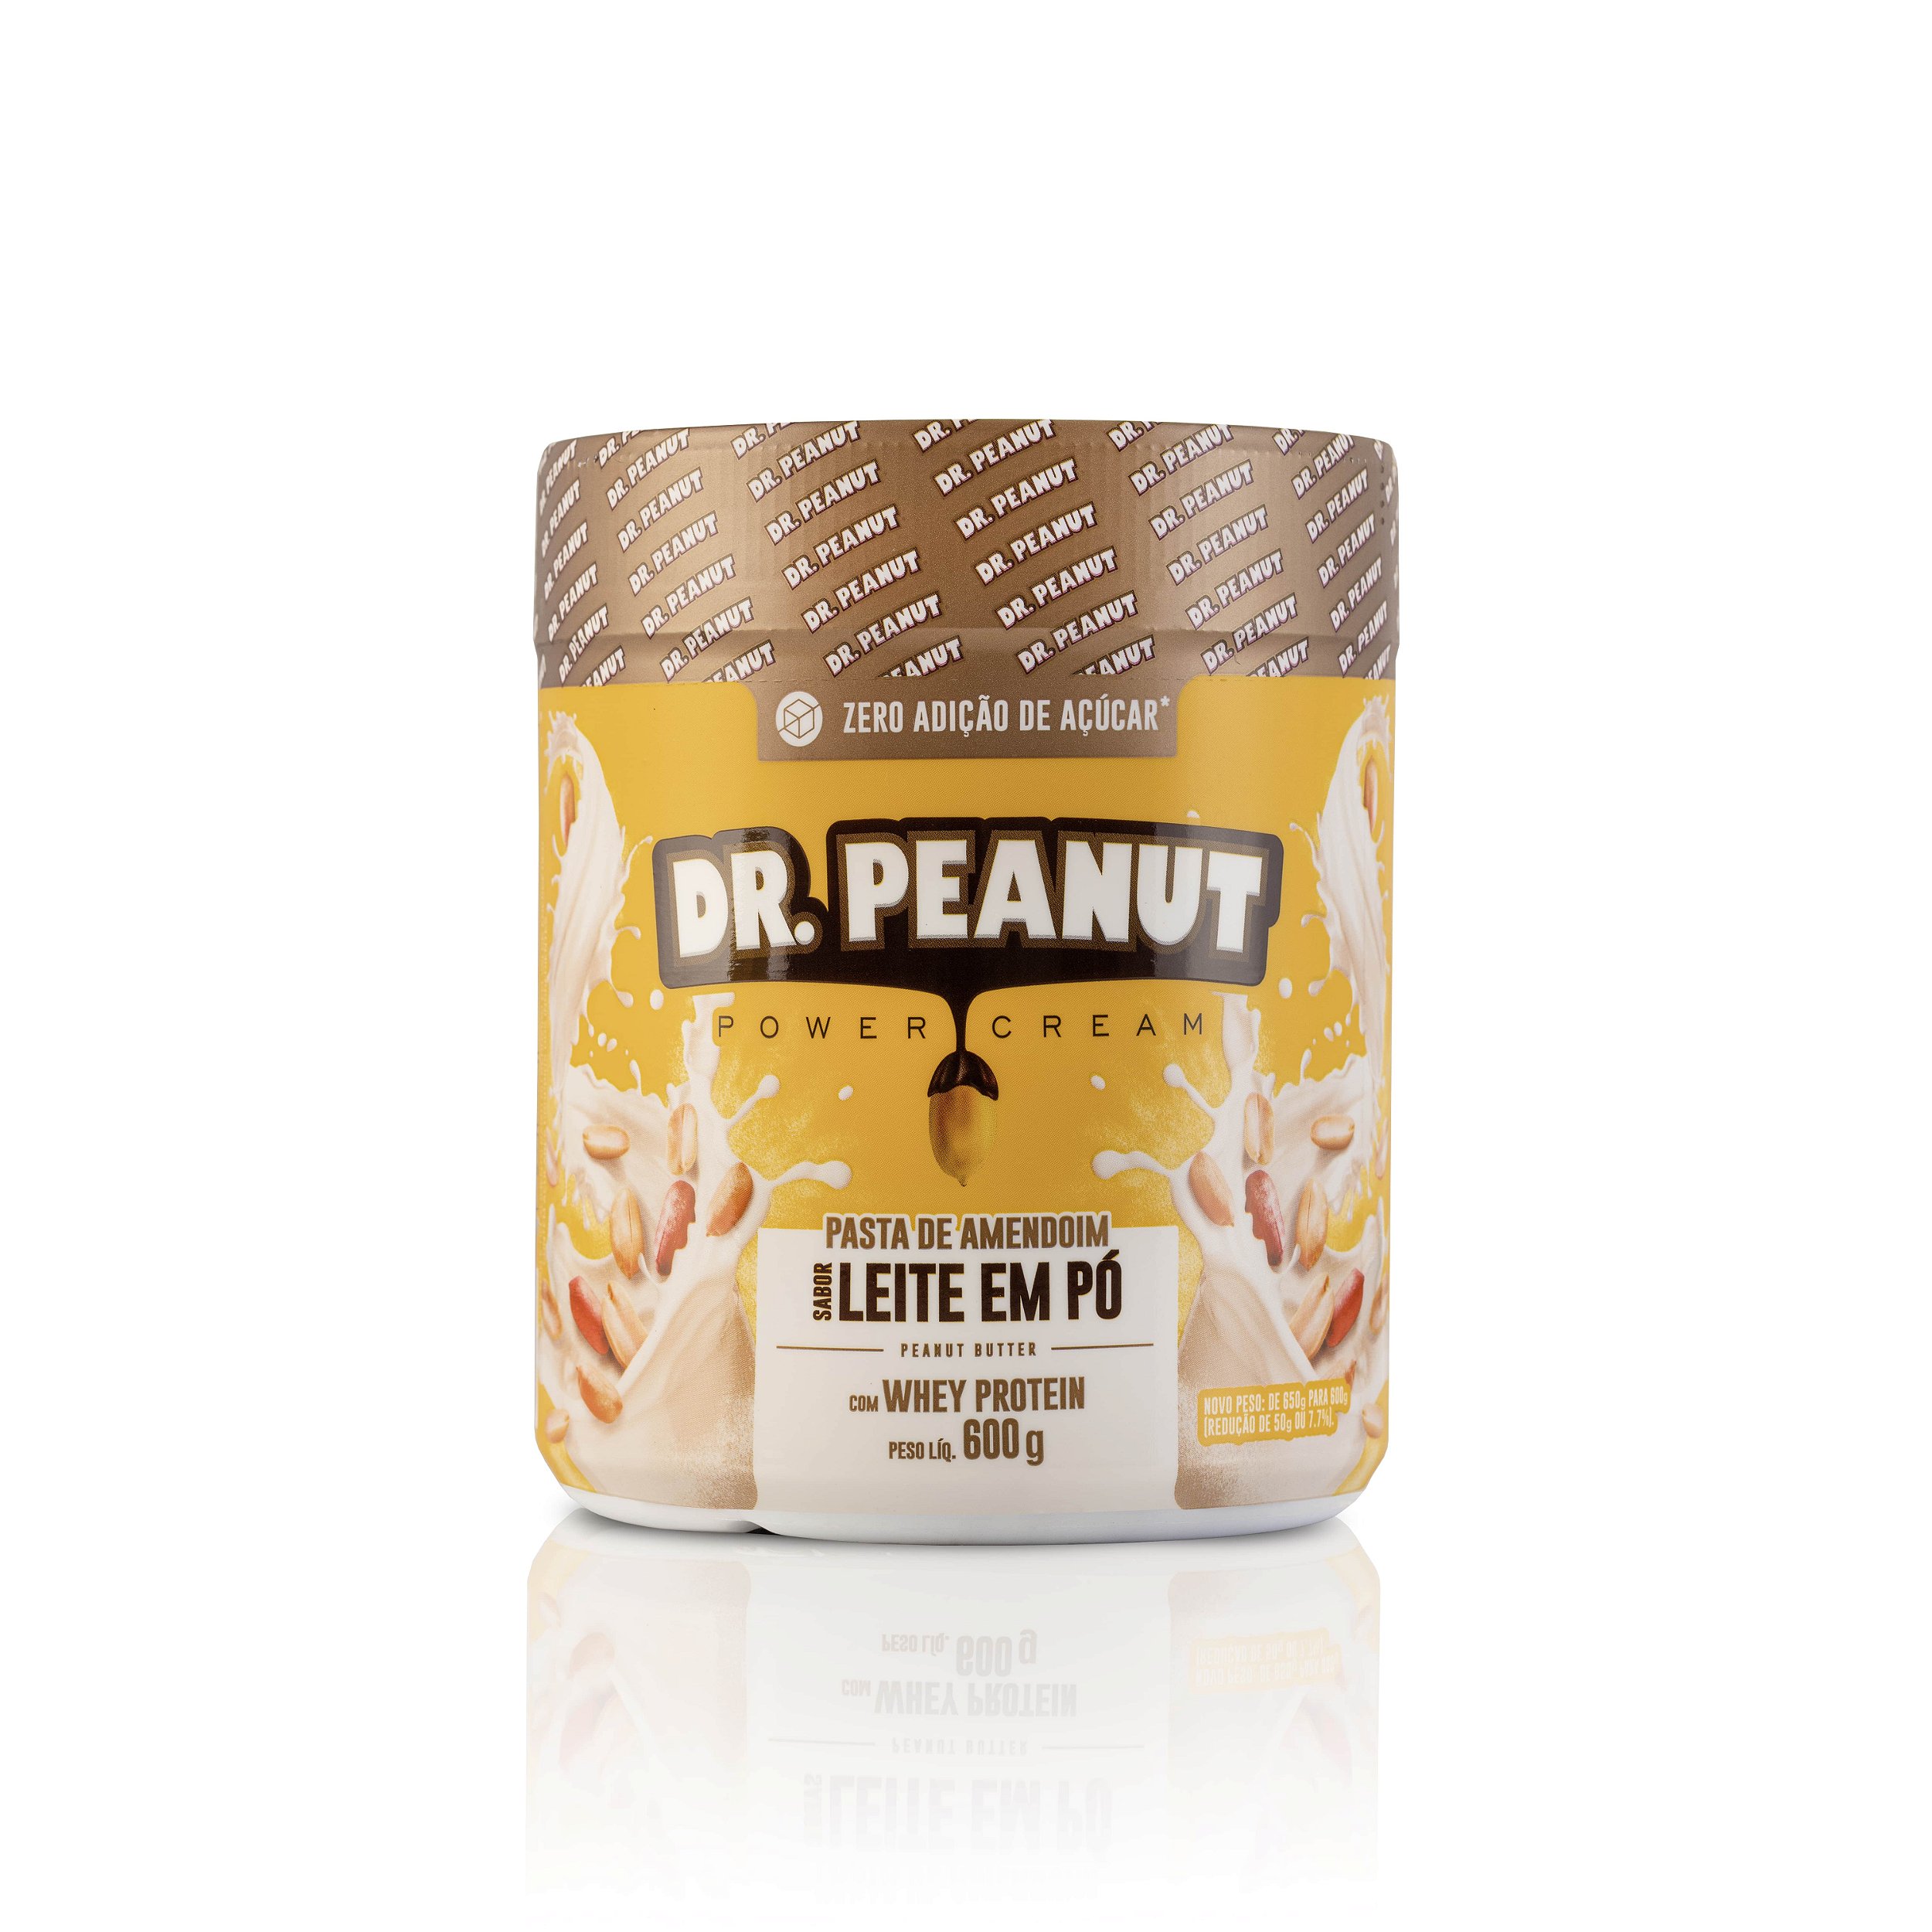 Pasta de Amendoim Leite em pó - Dr. Peanut